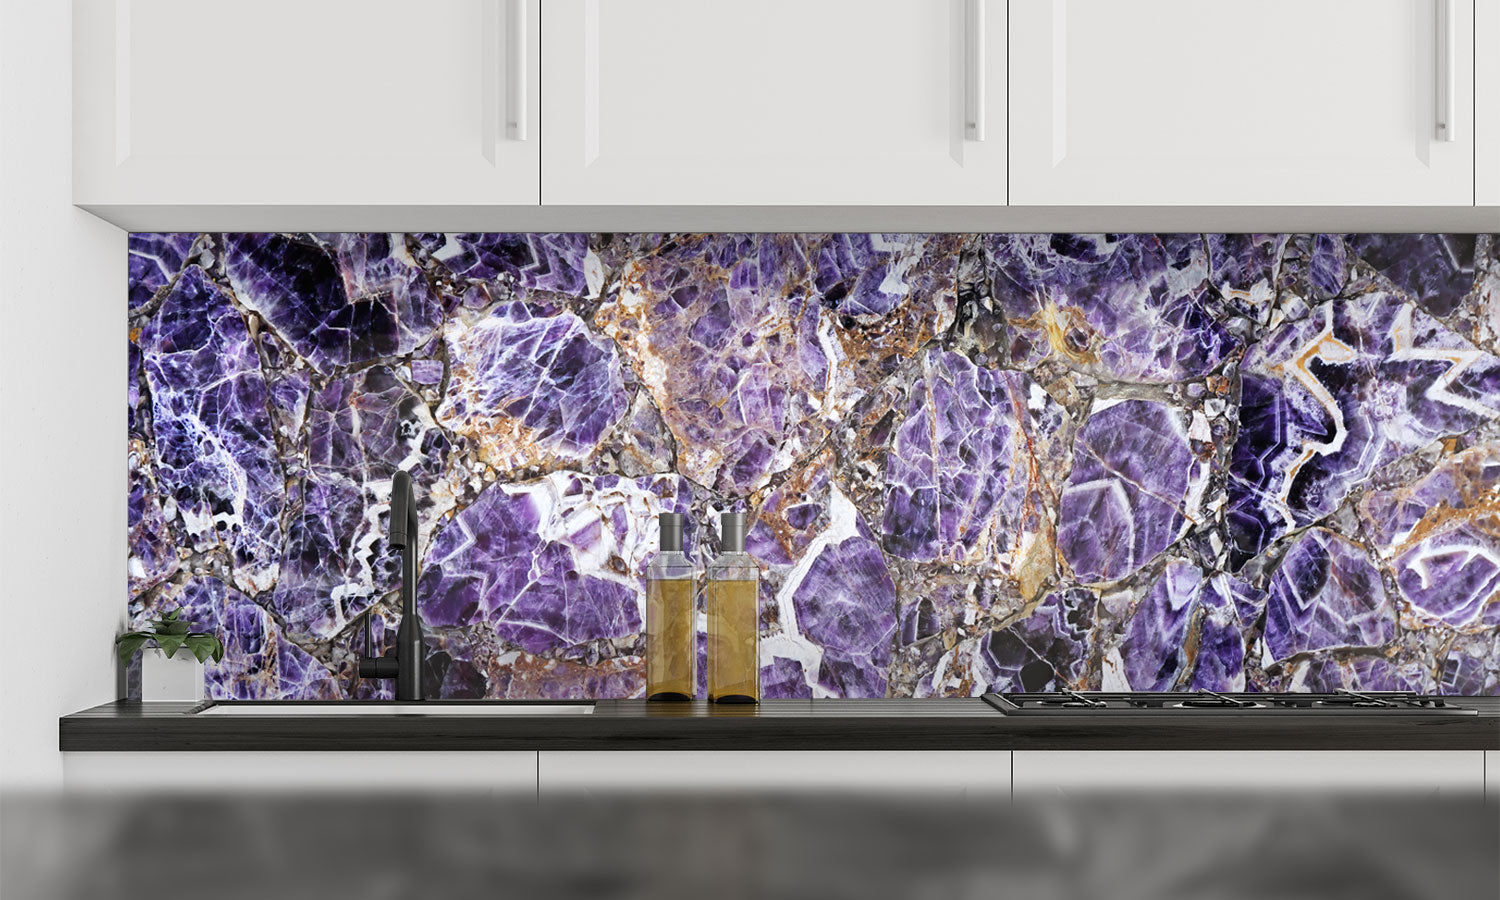 Kuhinjski paneli   Marble Purple - Stekleni / PVC plošče / Pleksi steklo - s tiskom za kuhinjo, Stenske obloge PKU062 - Life-decor.si